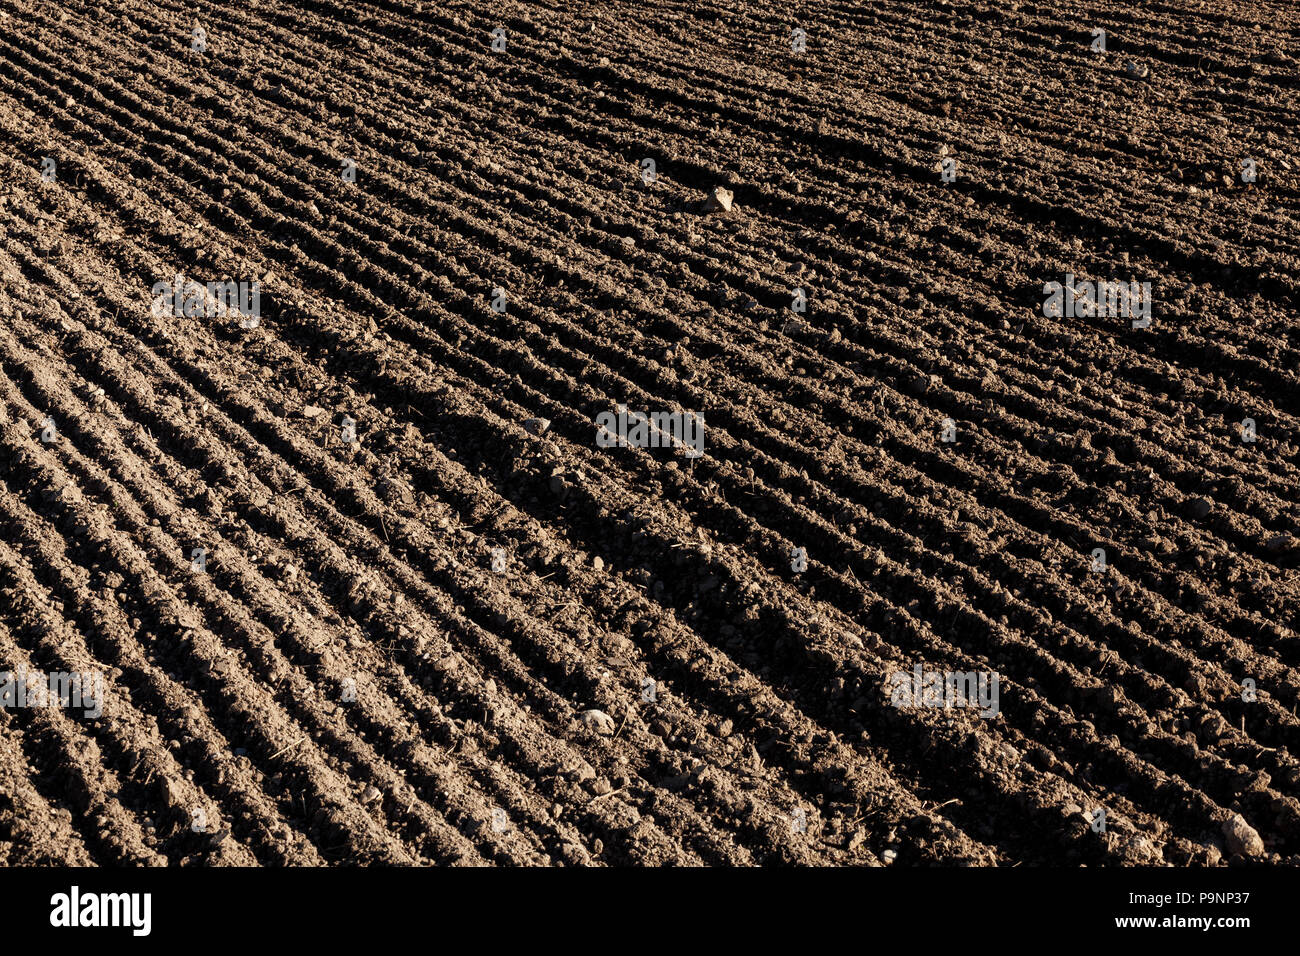 Arare il terreno in cui il frumento tenero è stato seminato, una fotografia di close-up di bruna terra in solchi nel campo Foto Stock